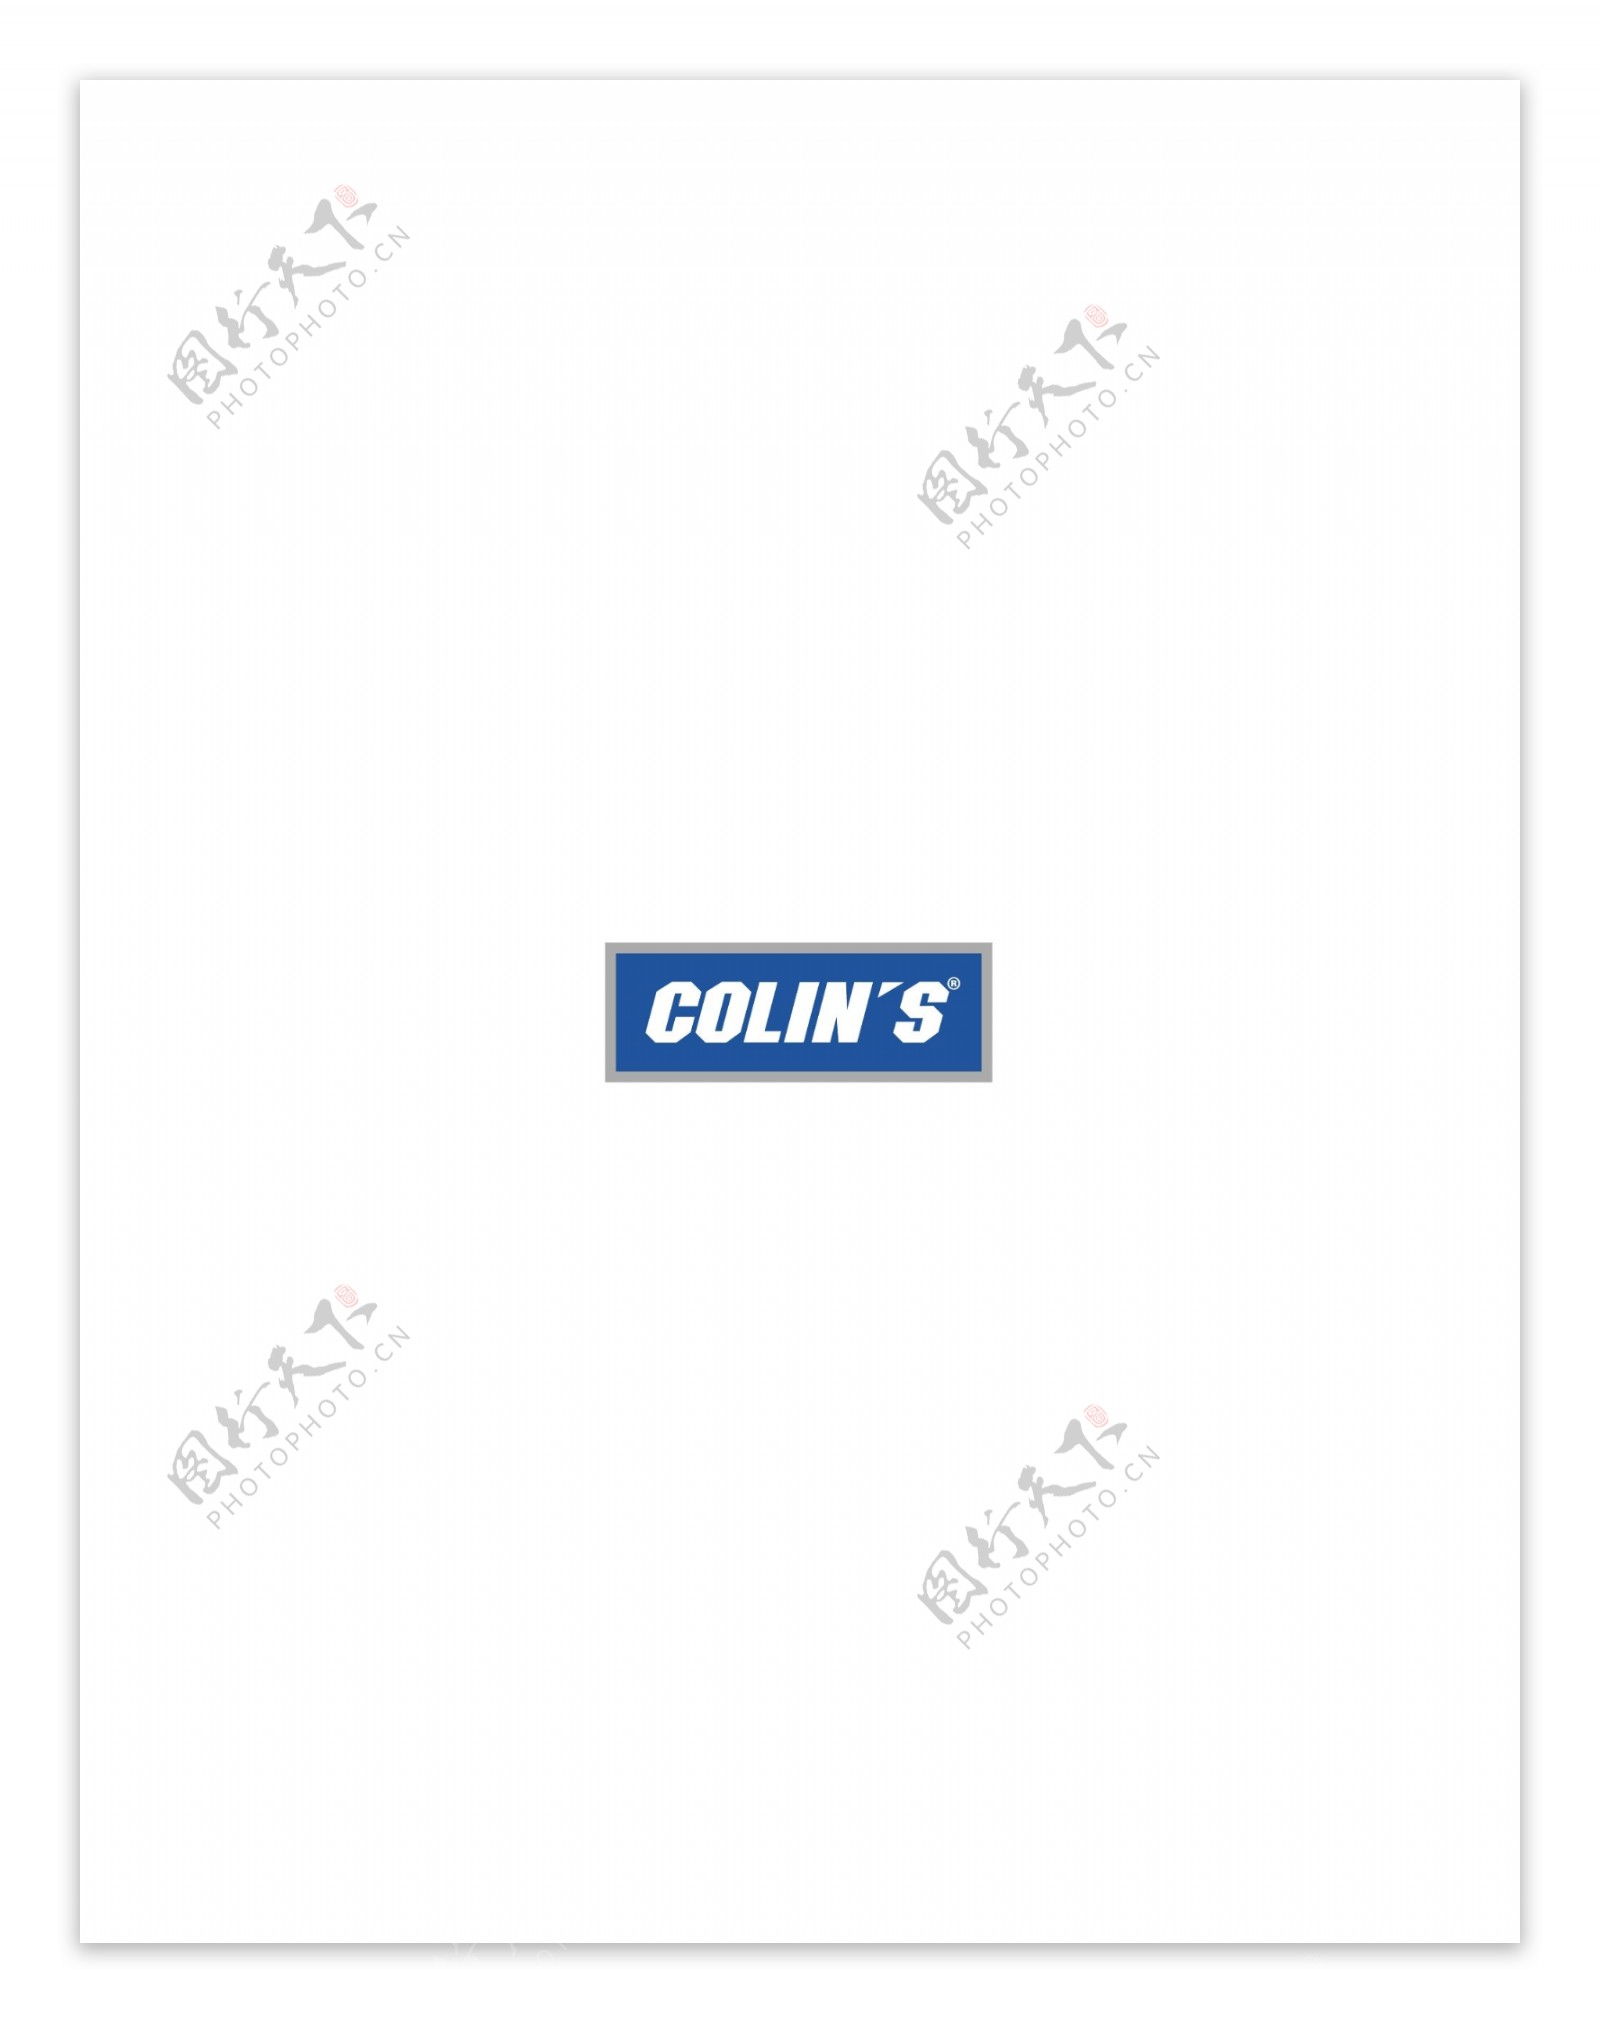 Colins2logo设计欣赏Colins2服饰品牌标志下载标志设计欣赏